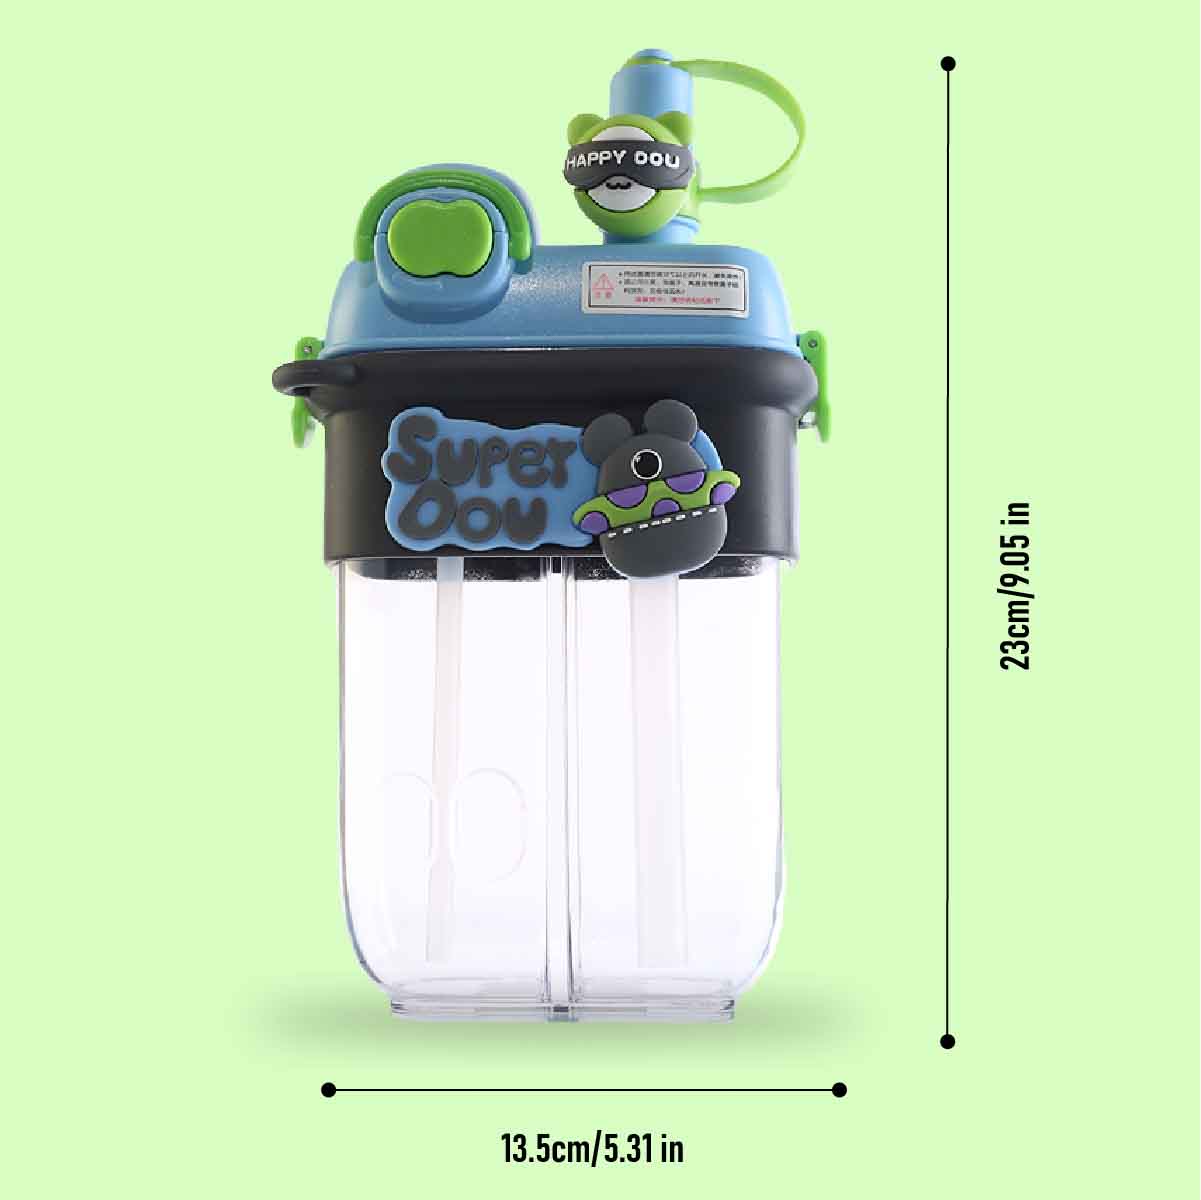 Dual Sipper water bottle - Blue